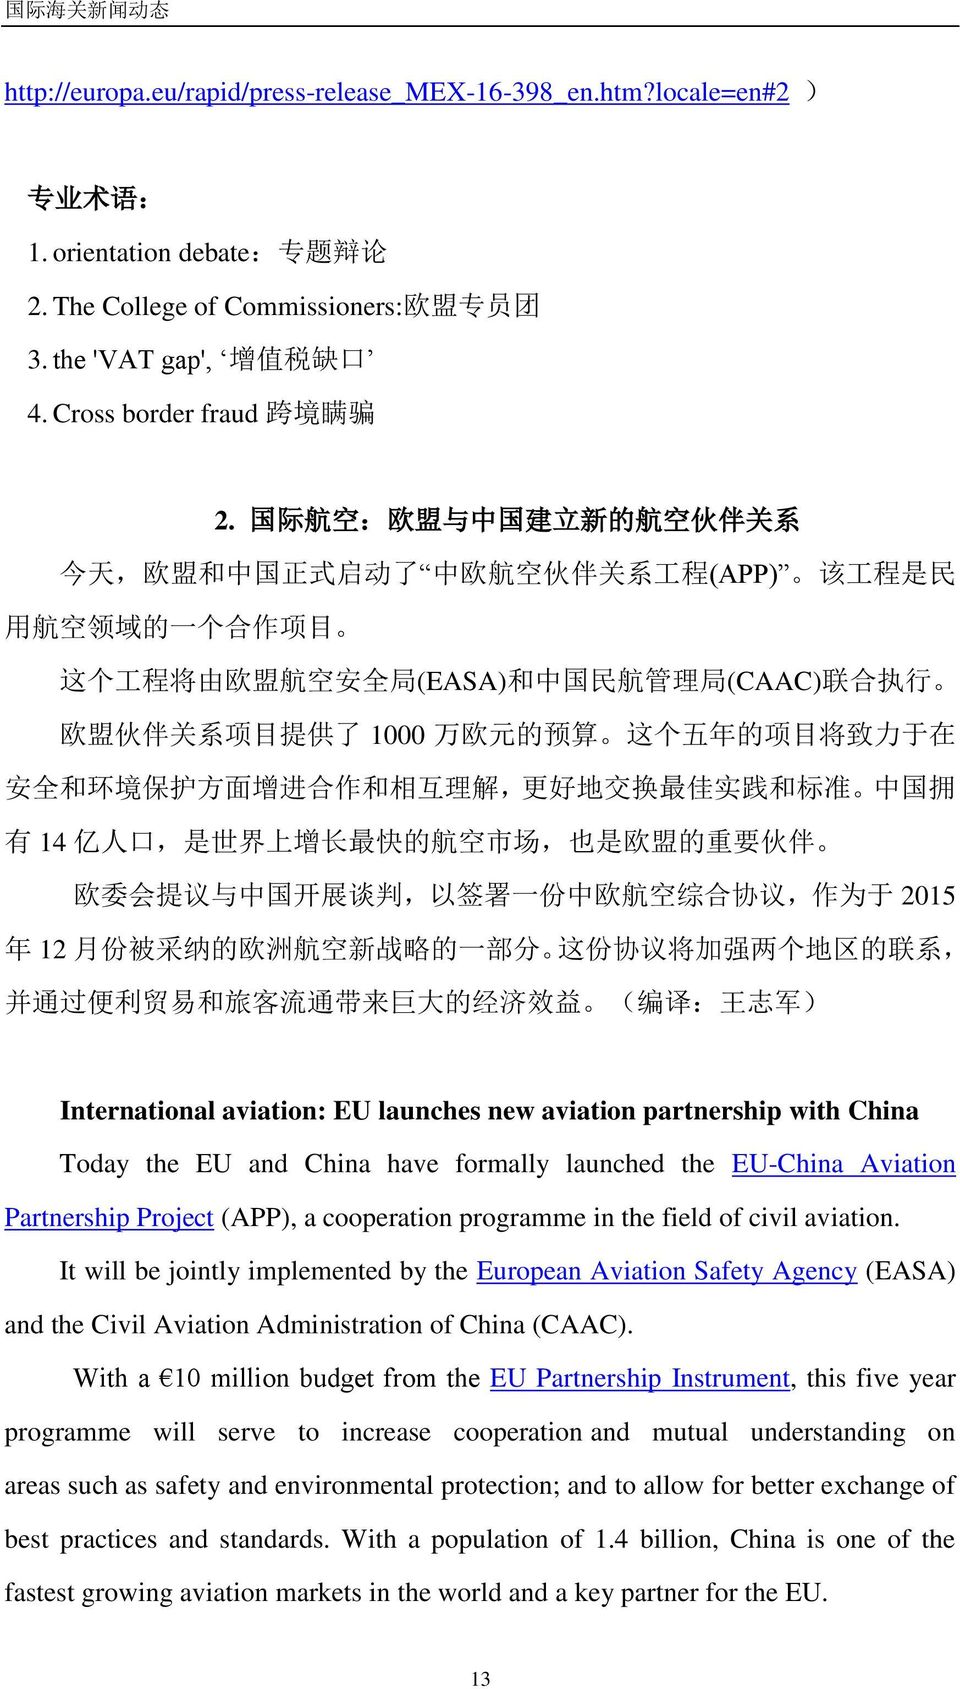 国 际 航 空 : 欧 盟 与 中 国 建 立 新 的 航 空 伙 伴 关 系 今 天, 欧 盟 和 中 国 正 式 启 动 了 中 欧 航 空 伙 伴 关 系 工 程 (APP) 该 工 程 是 民 用 航 空 领 域 的 一 个 合 作 项 目 这 个 工 程 将 由 欧 盟 航 空 安 全 局 (EASA) 和 中 国 民 航 管 理 局 (CAAC) 联 合 执 行 欧 盟 伙 伴 关